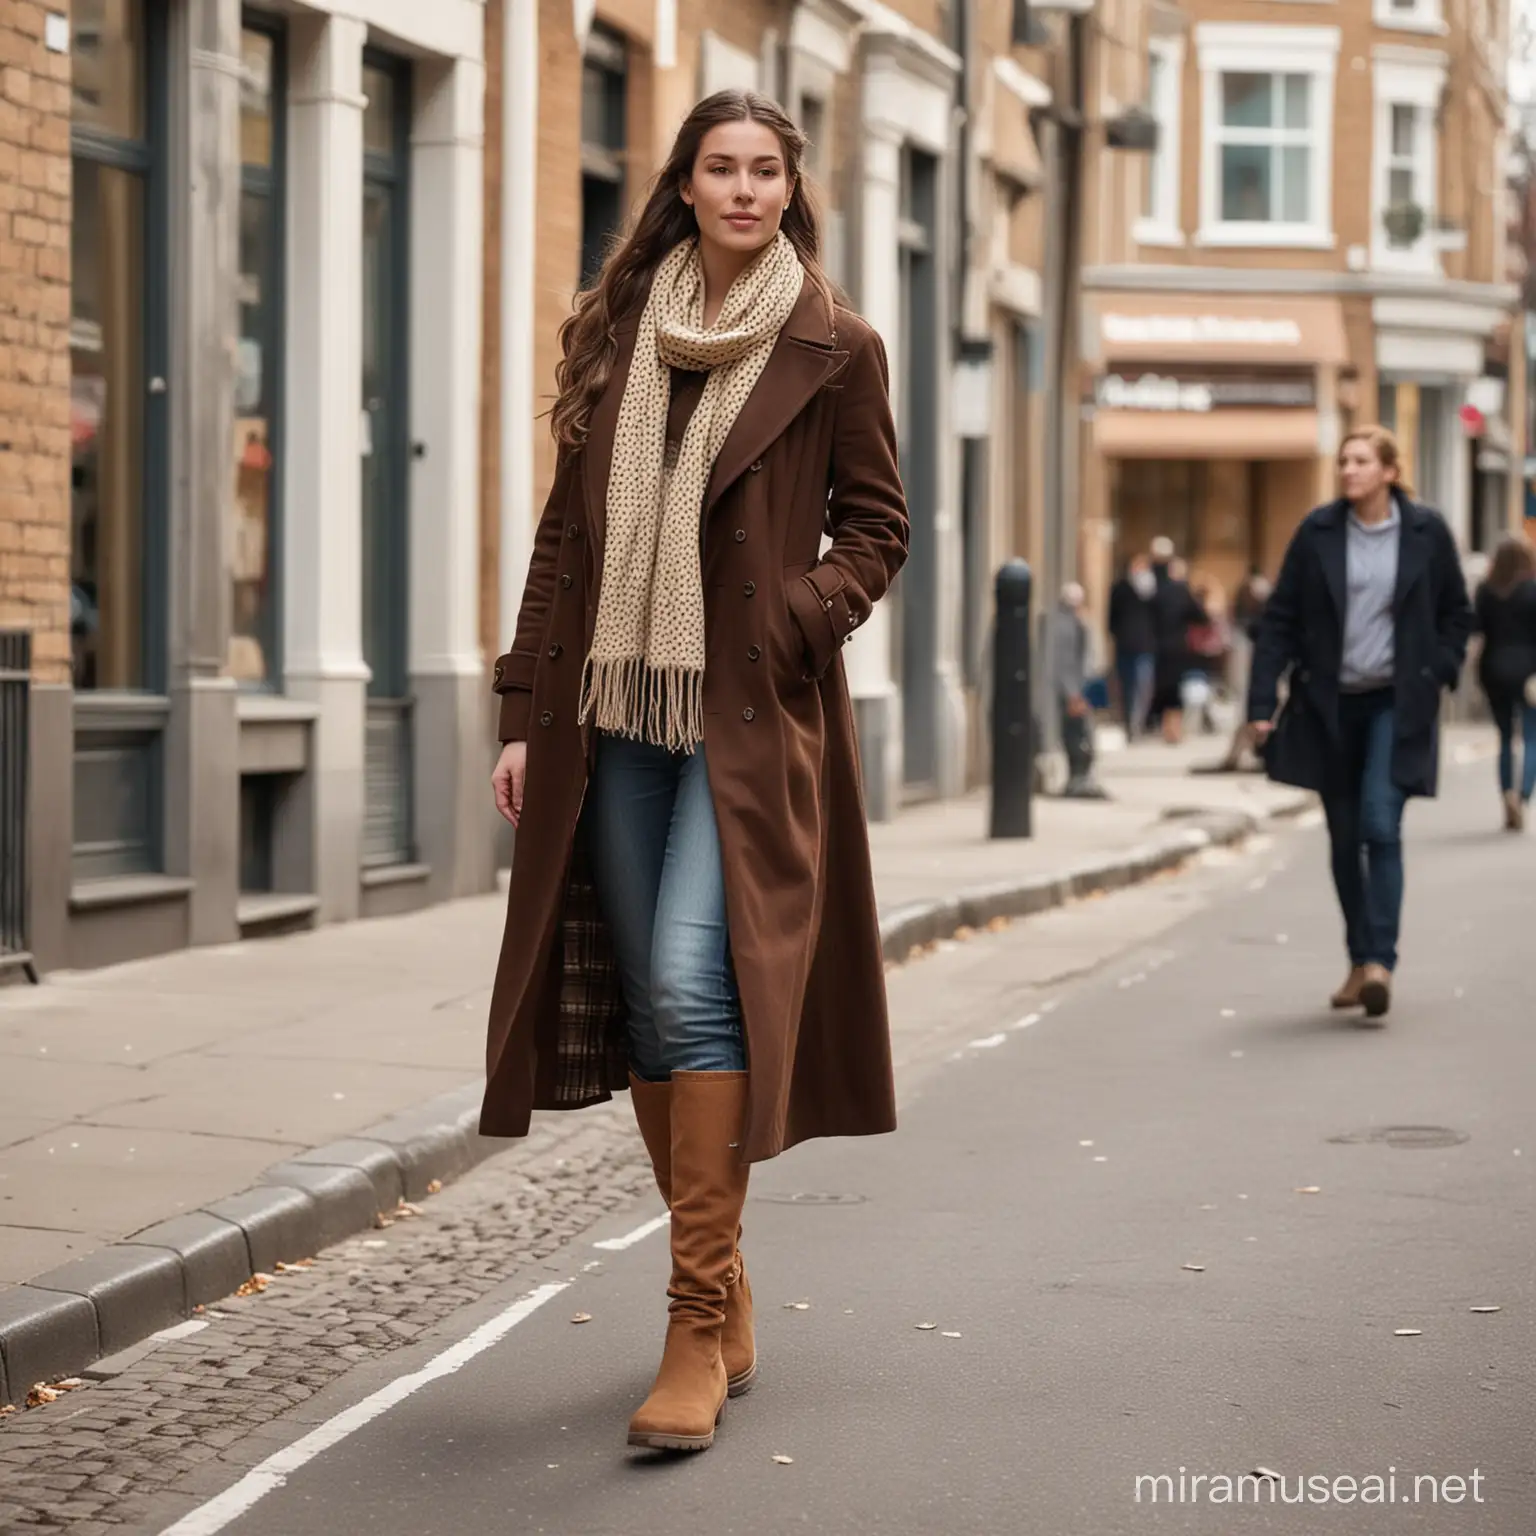 По улице идет молодая дама с одной длинной косой,  в длинном темно коричневом двубортном пальто и кремом шарфе в горошек, на ногах бежевые сапоги.